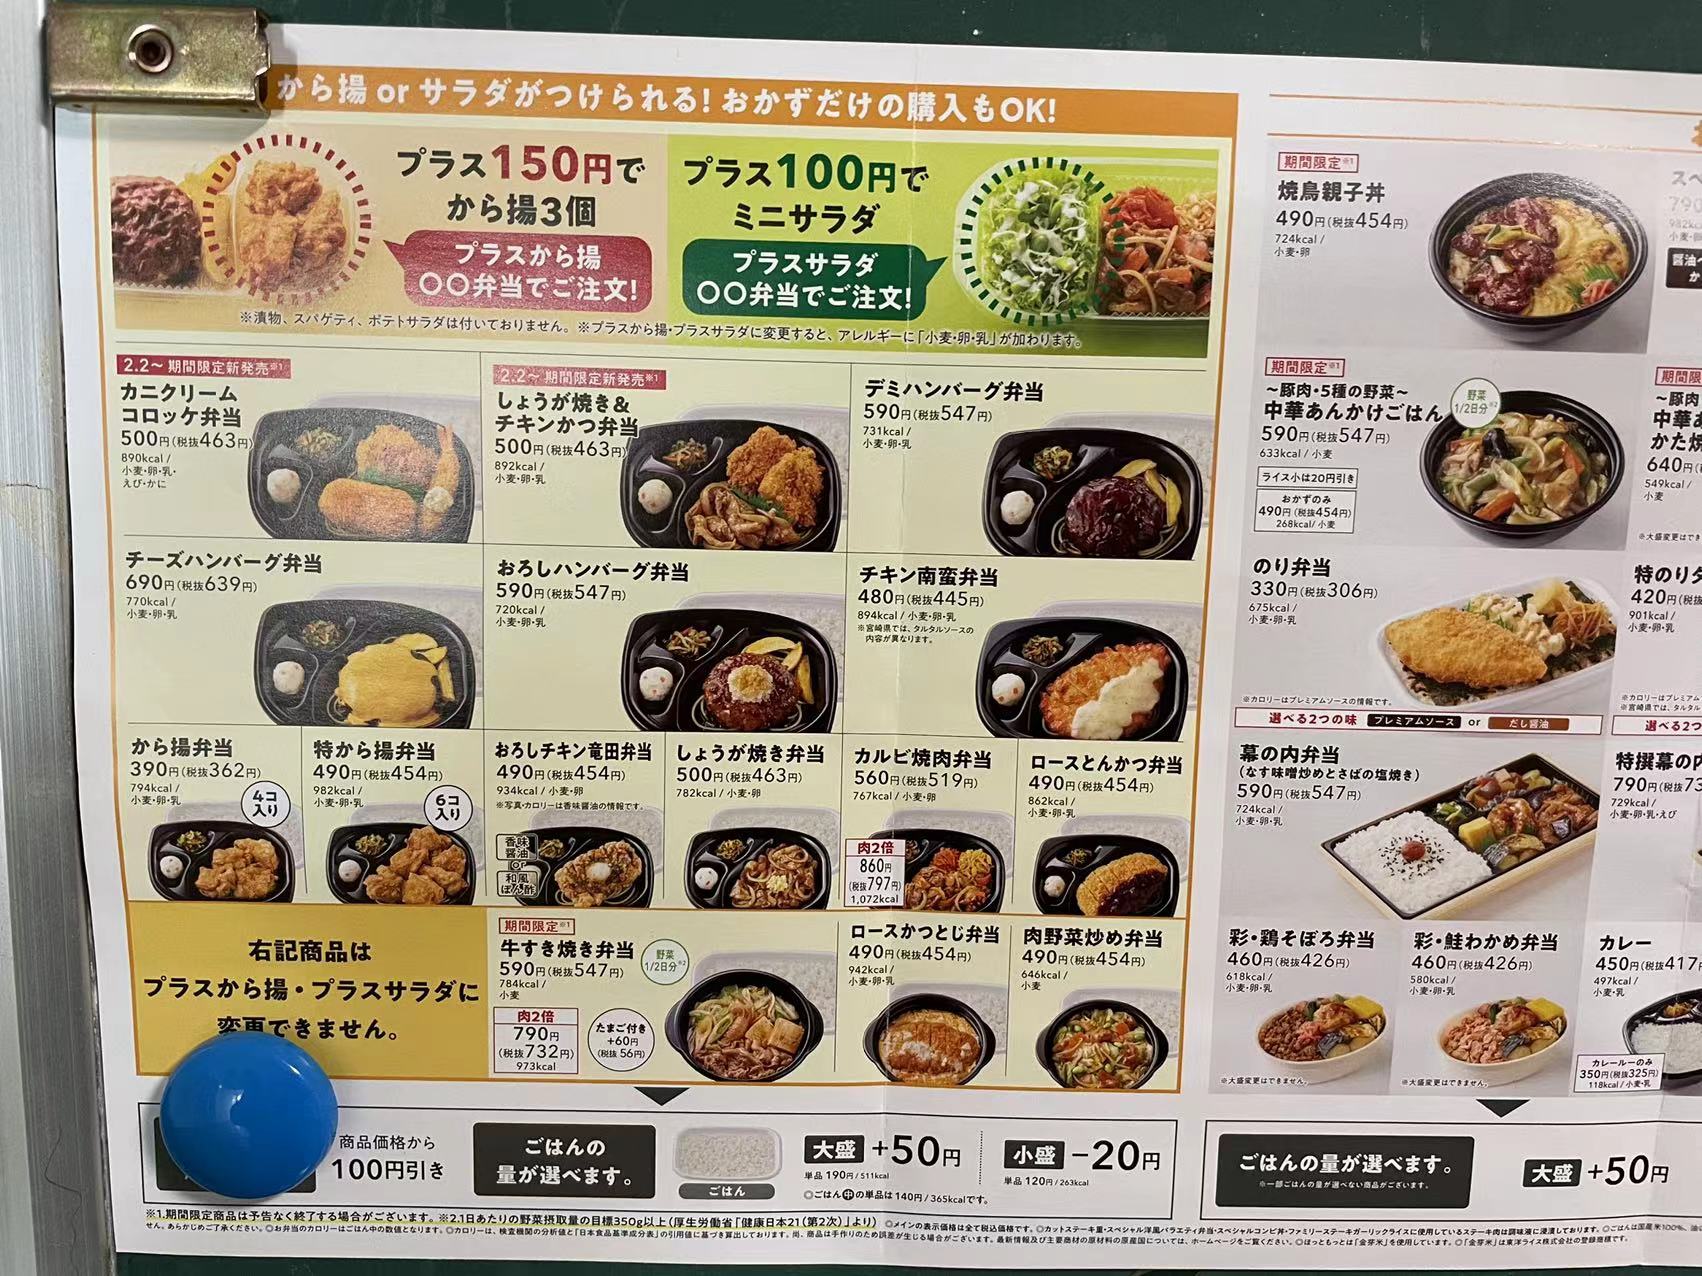 日本人在公司的午餐都吃什么